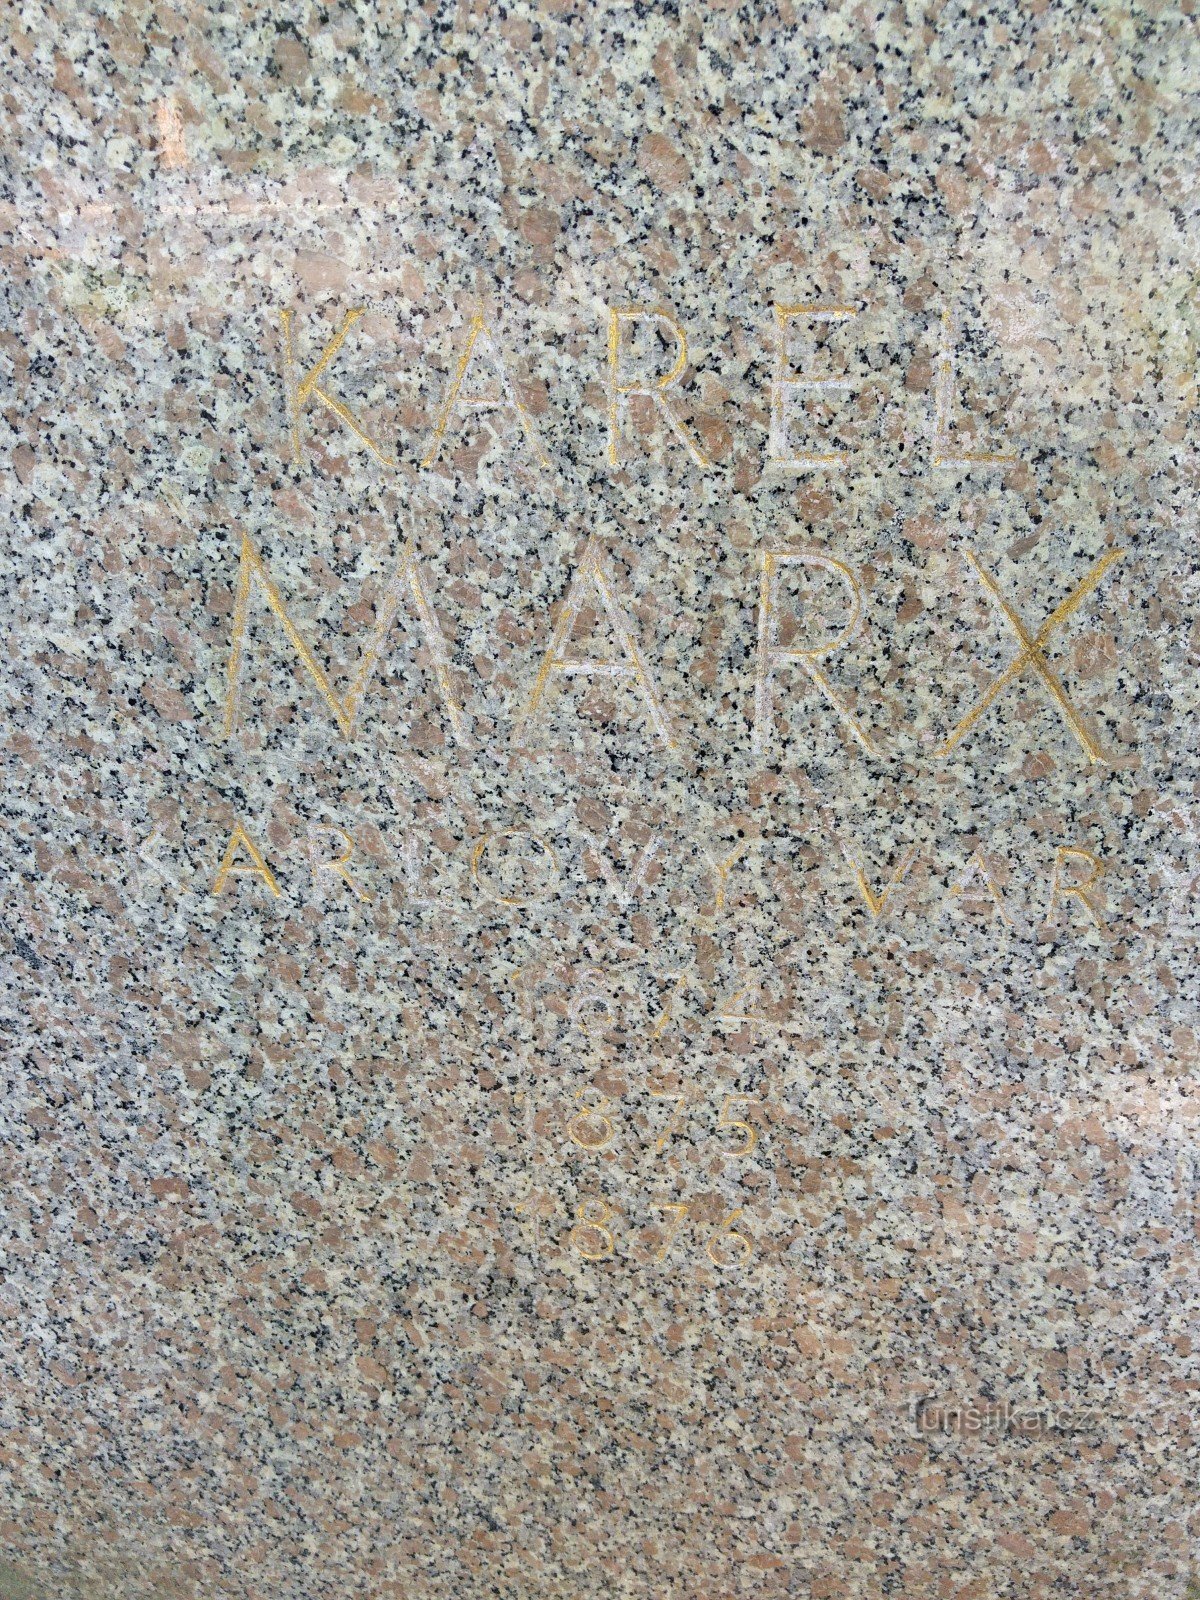 Spomenik Karlu Marxu - Karlovy Vary